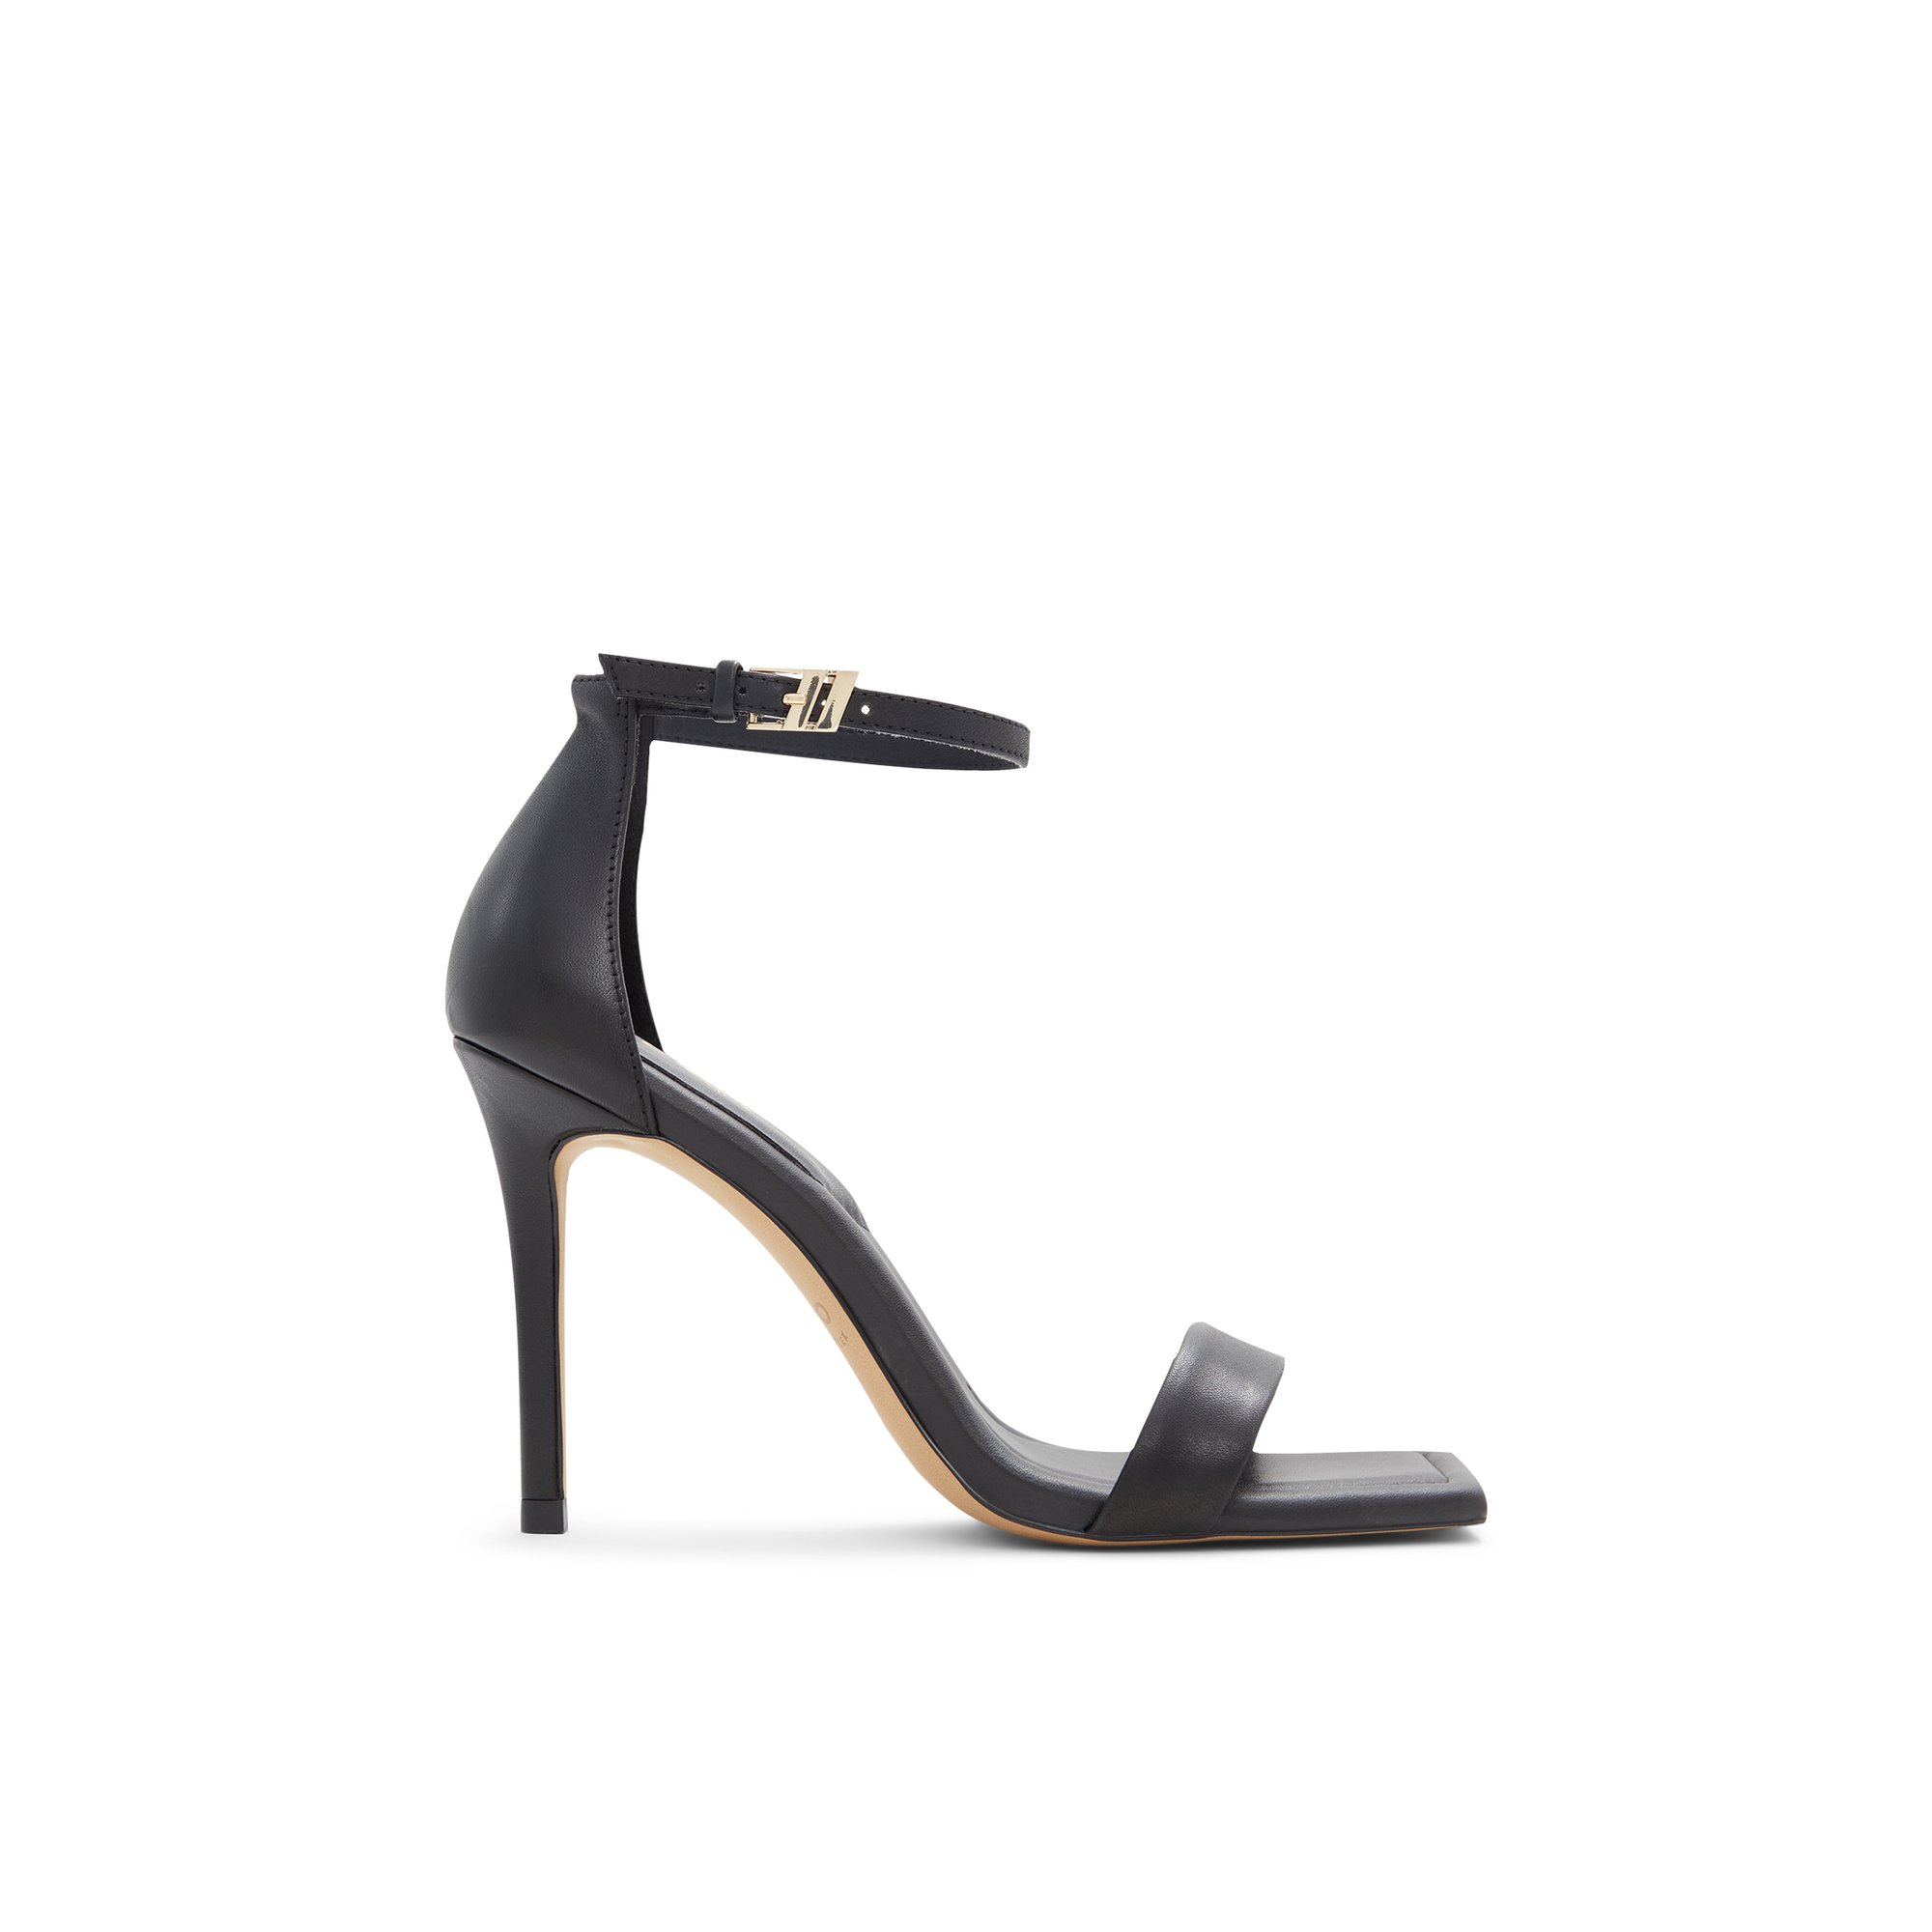 ALDO Renza - Women's Sandals Heeled - Black